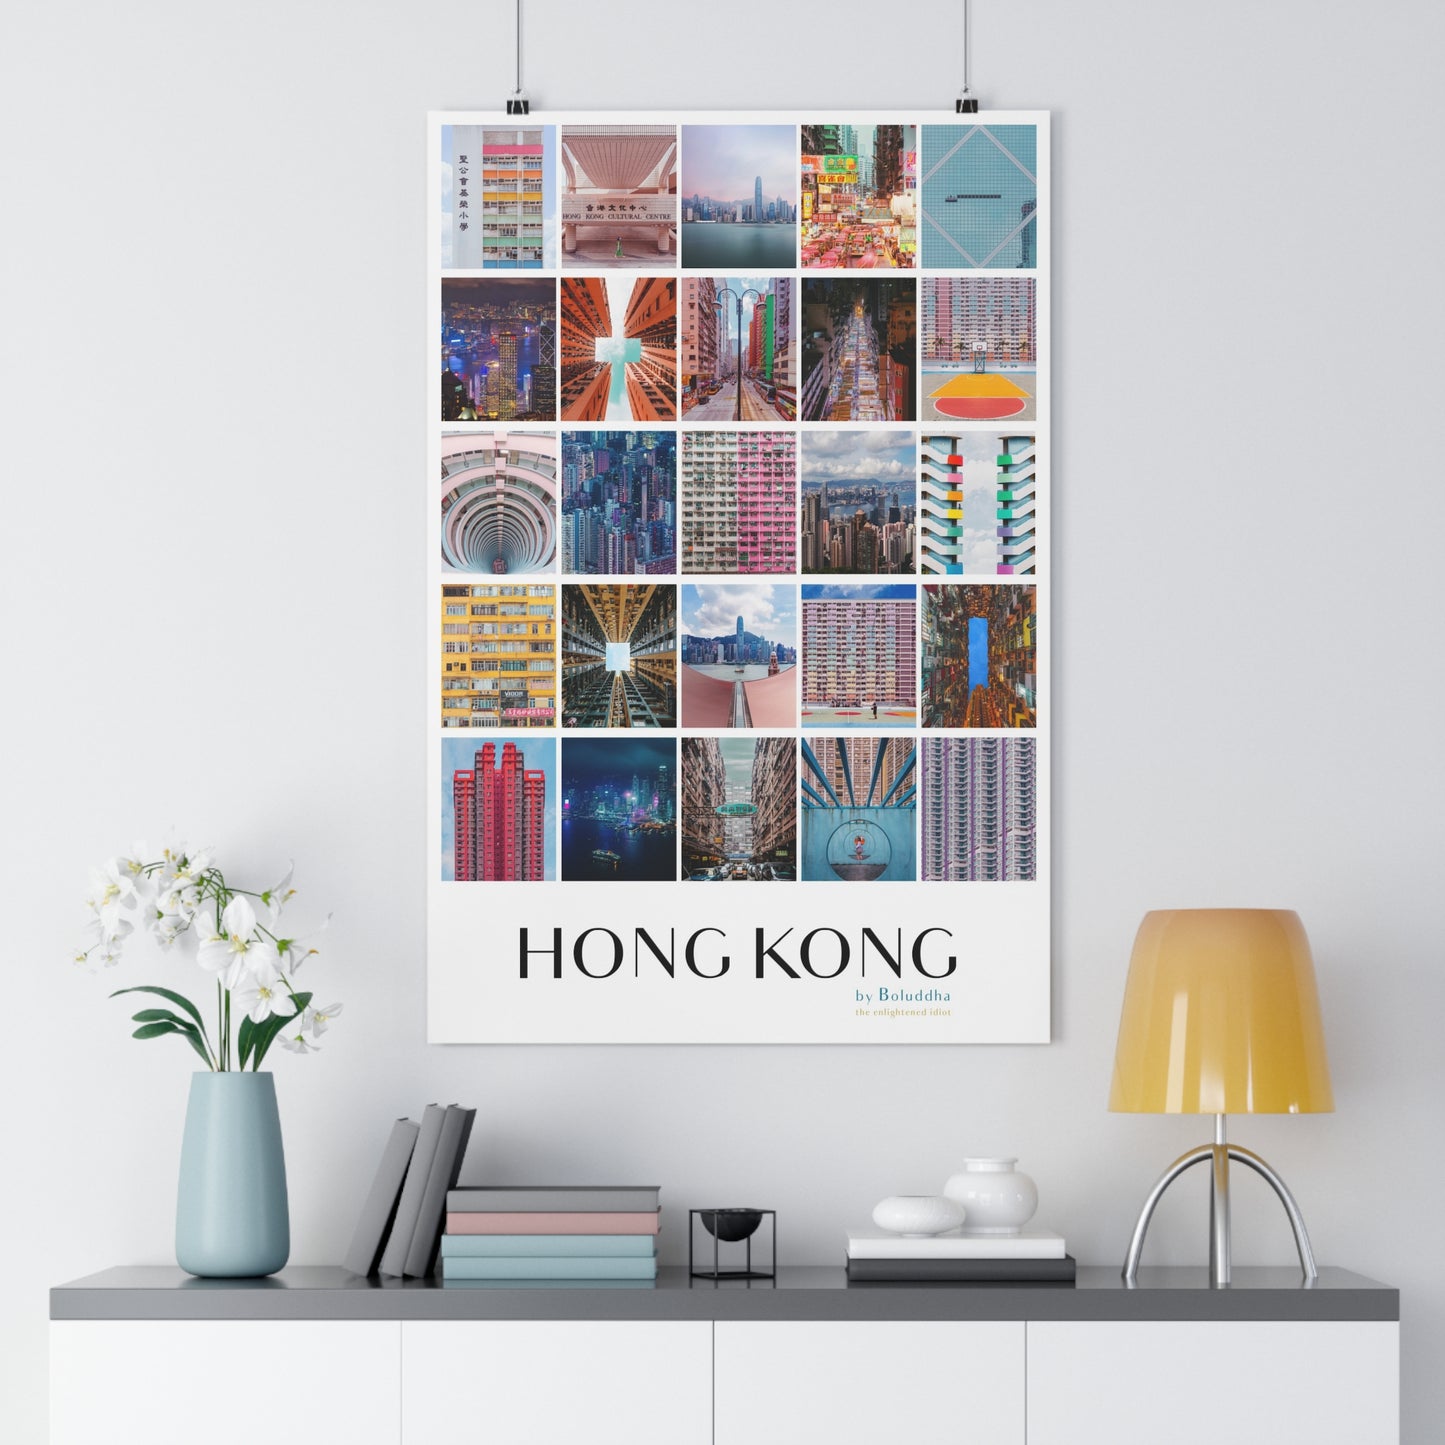 Hong Kong by Boluddha